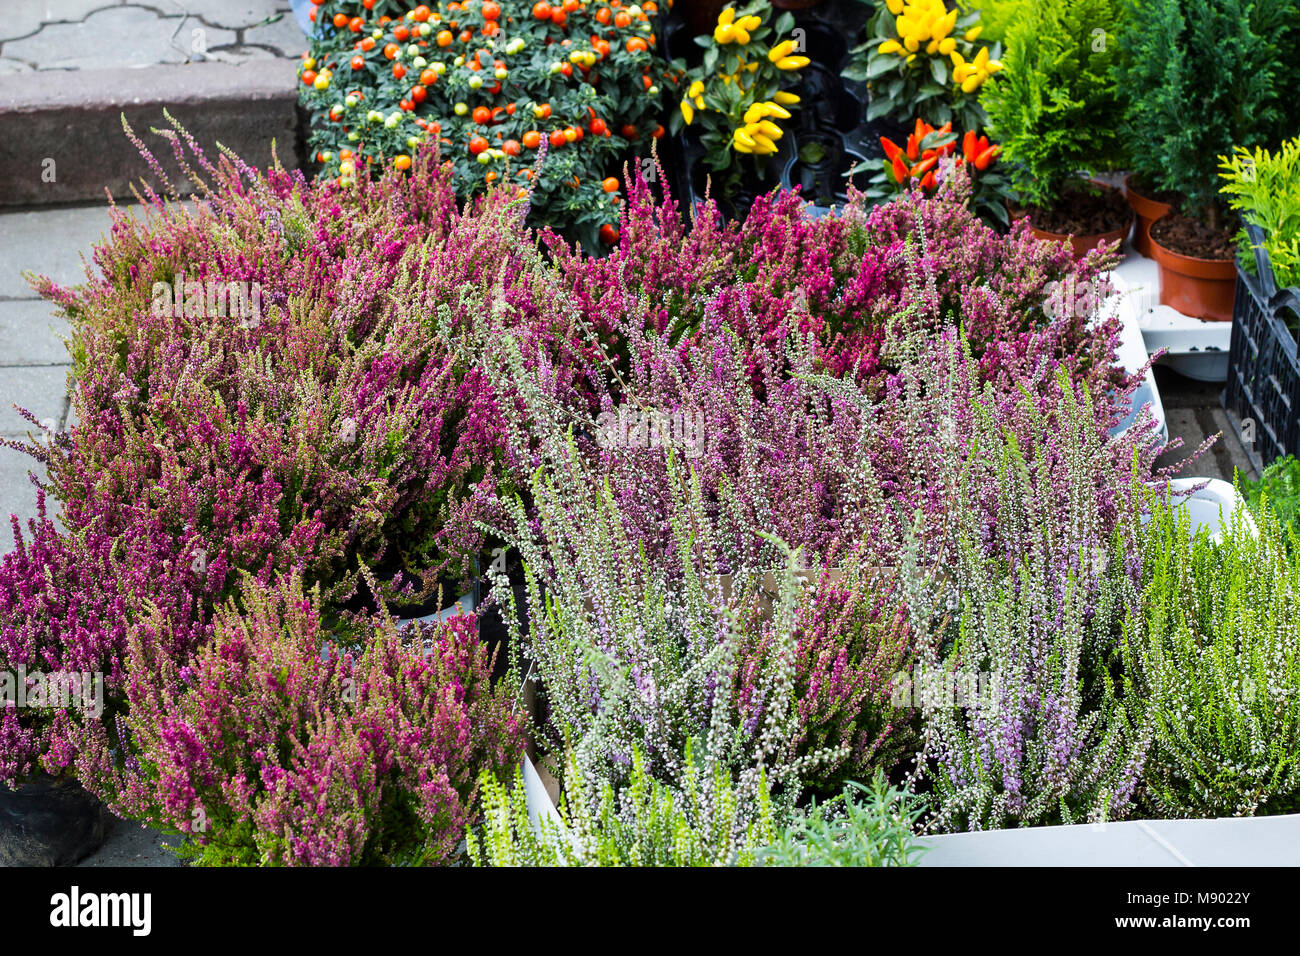 Calluna vulgaris Blumen in Töpfe im Garten Center verkauft (gemeinsame Heather, Ling bekannt, oder einfach Heather blühende Pflanzen). Schöne rosa und lila Stockfoto